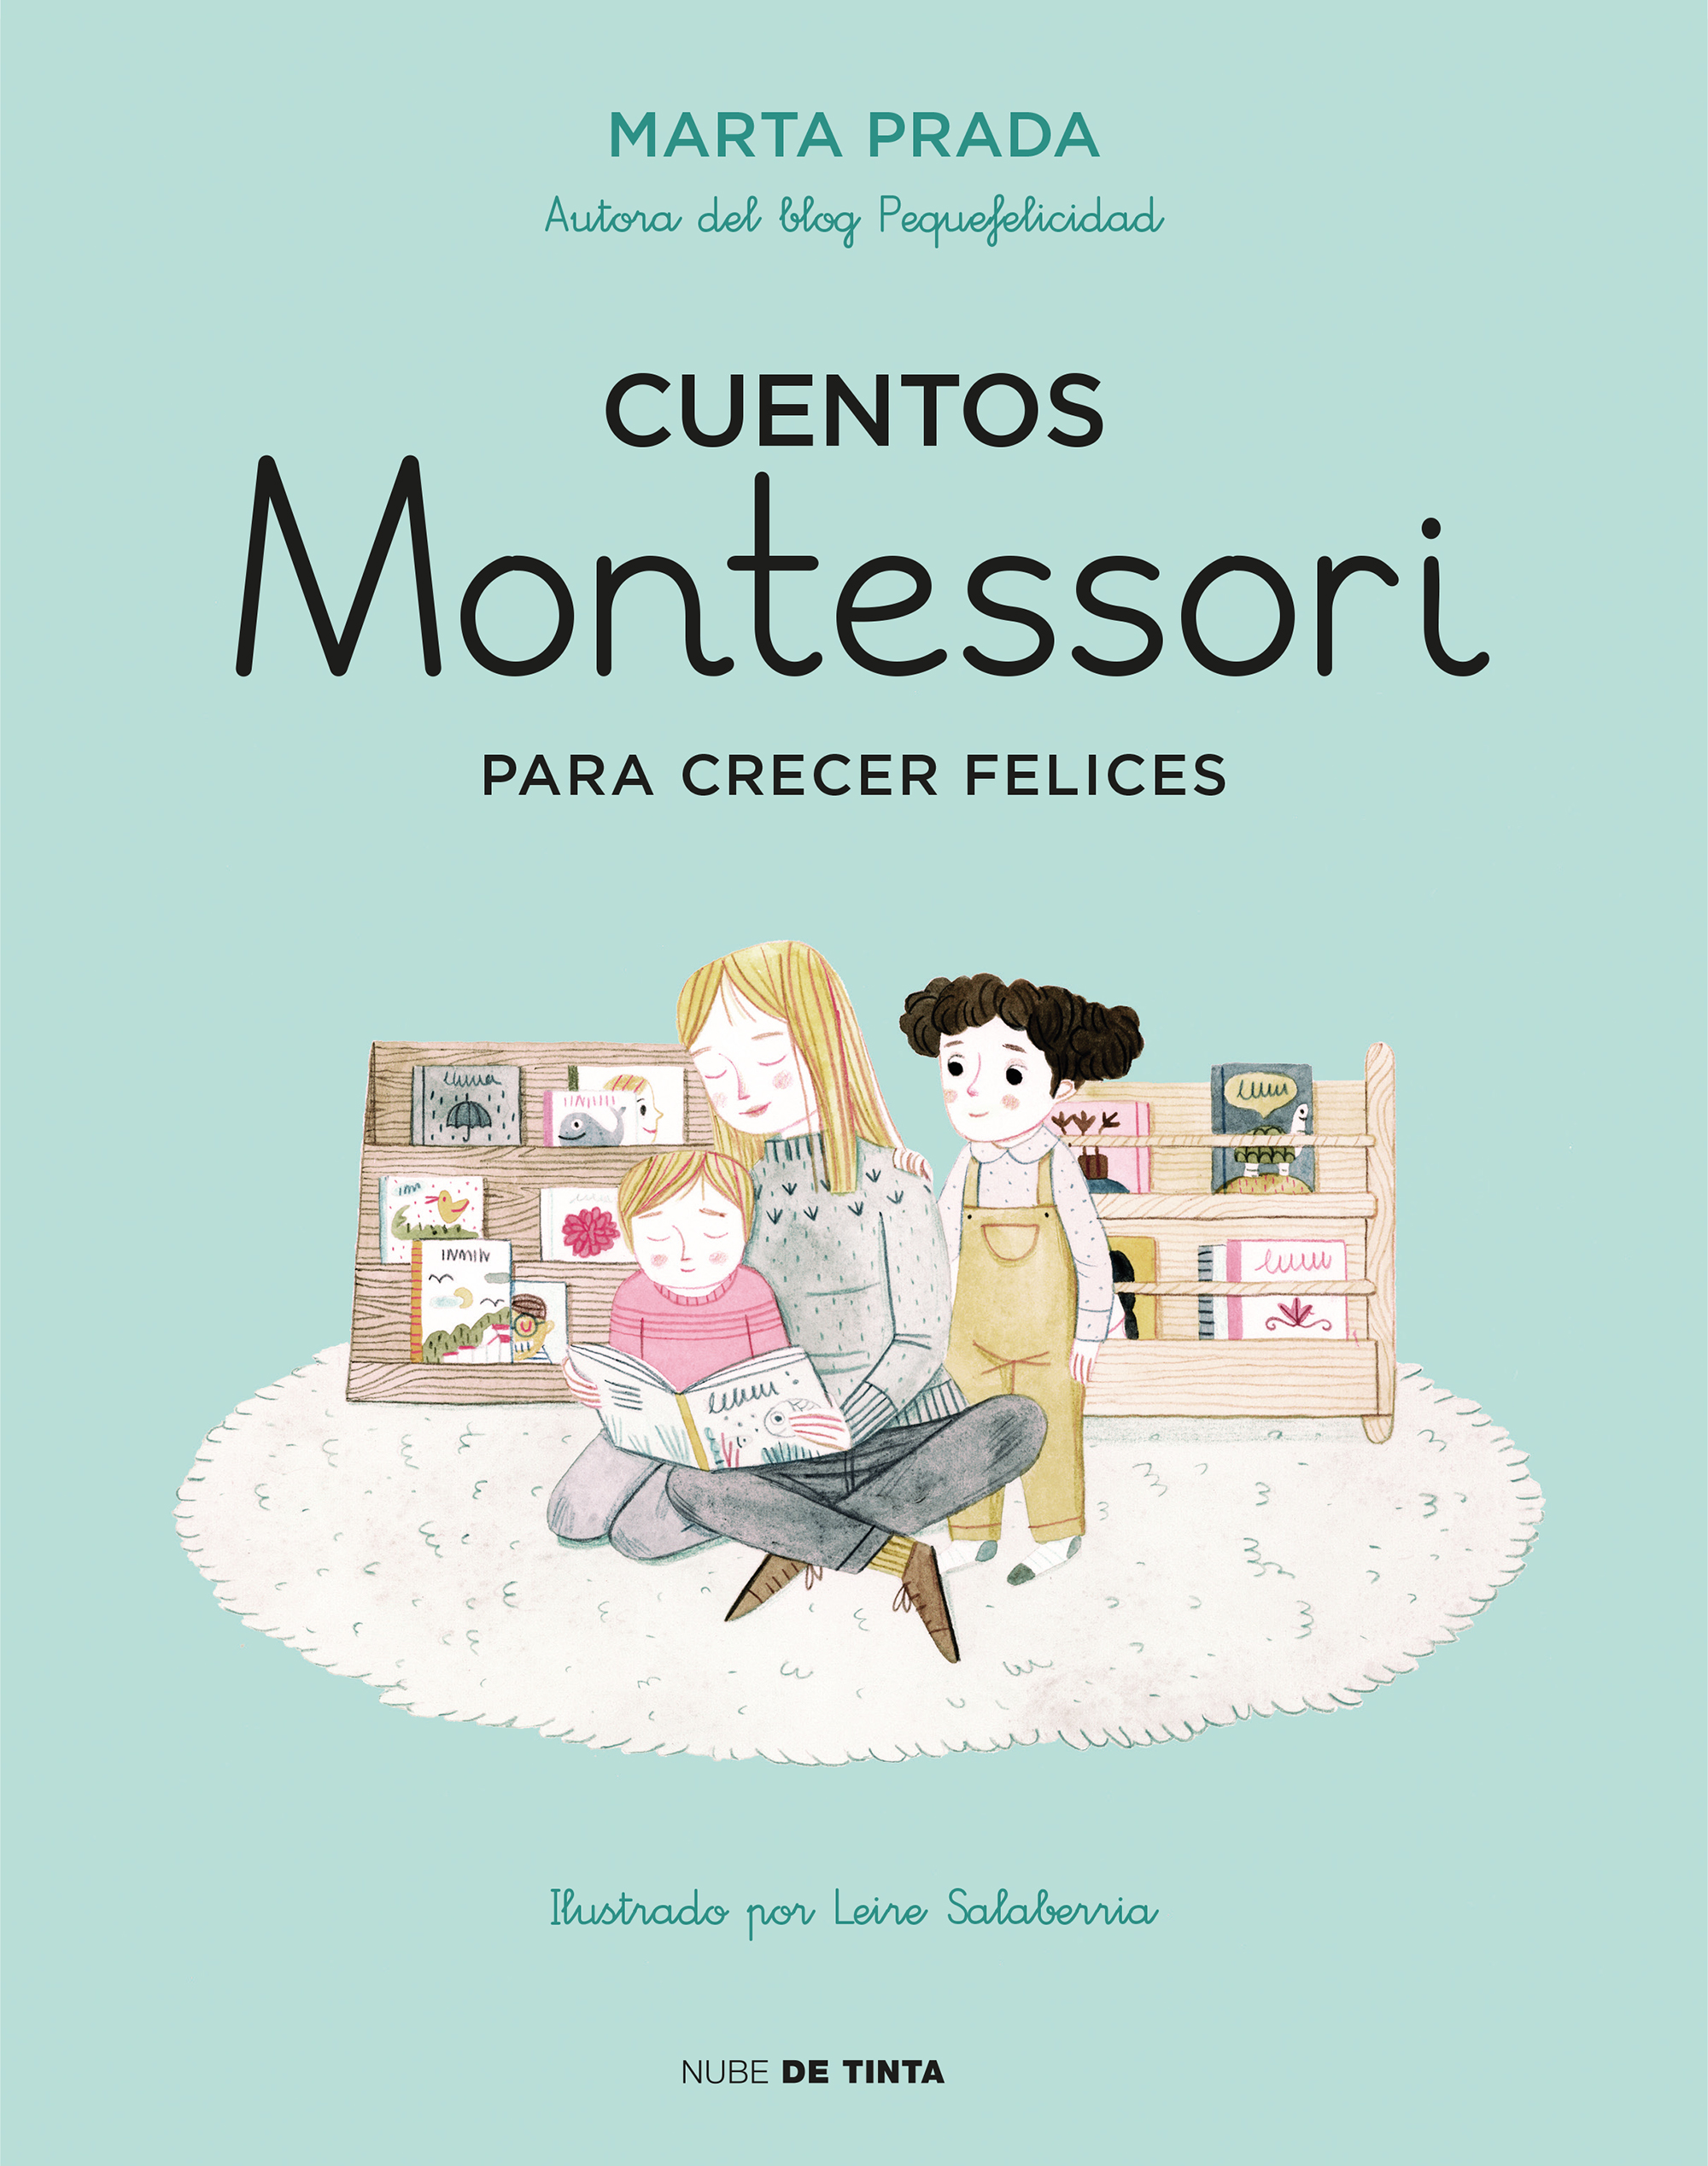 Creciendo con Montessori. Cuadernos de vacaciones - Vacaciones con  Montessori (3 años)